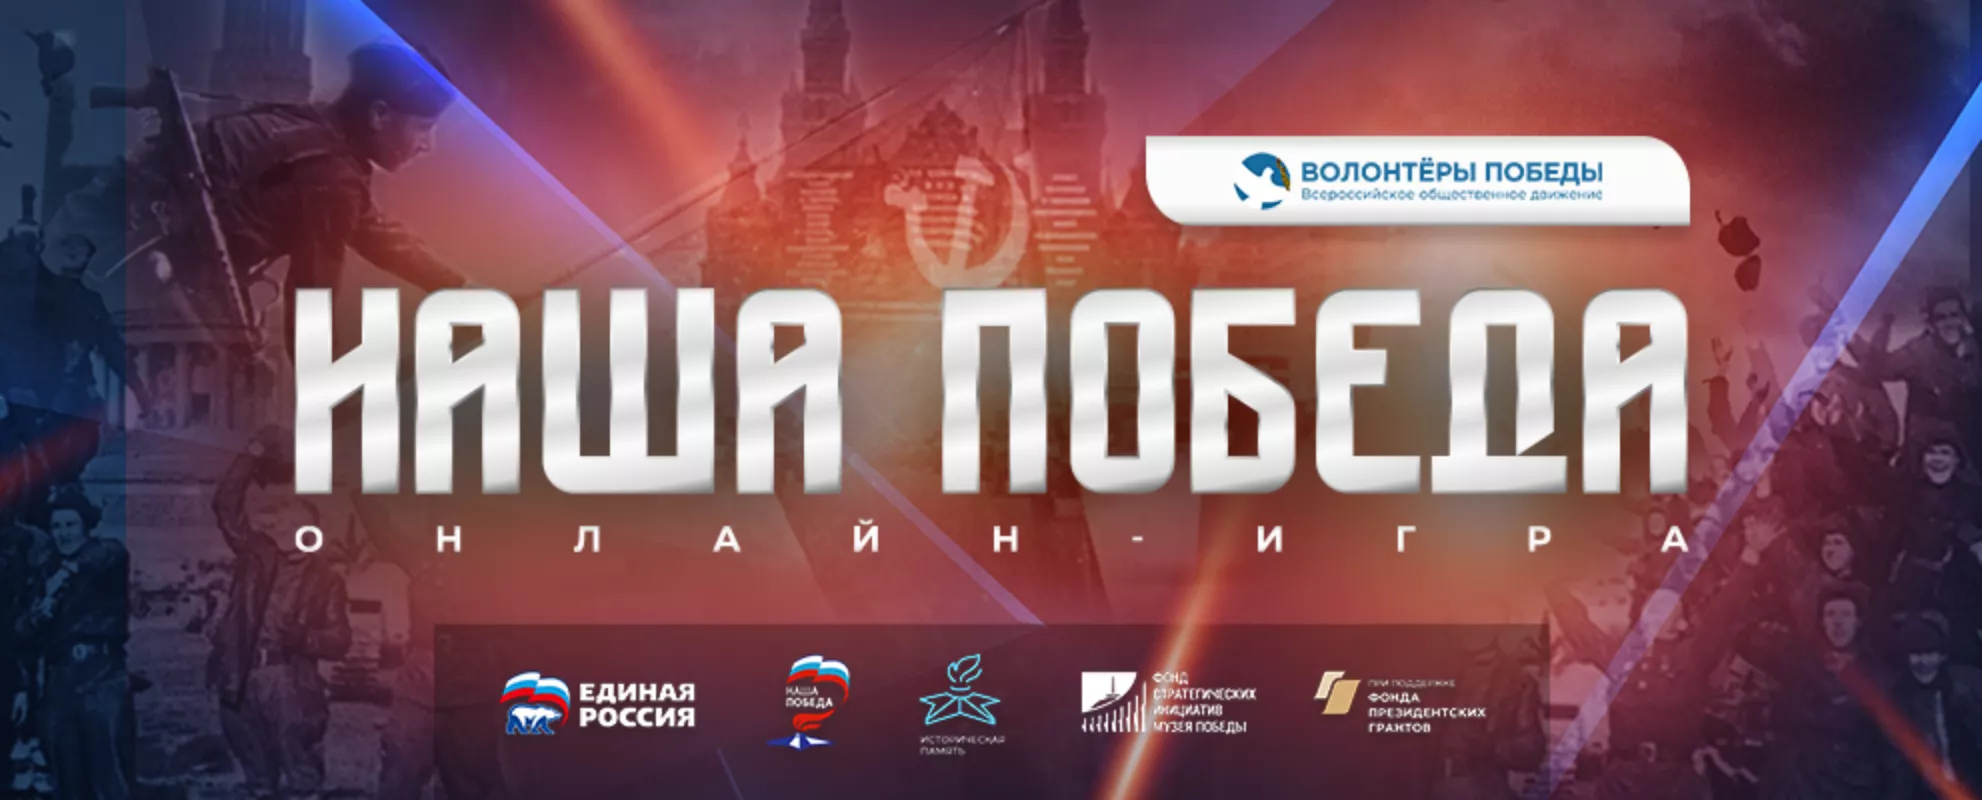 Жители Краснодарского края могут принять участие во Всероссийской интеллектуальной онлайн-игре «Наша Победа»